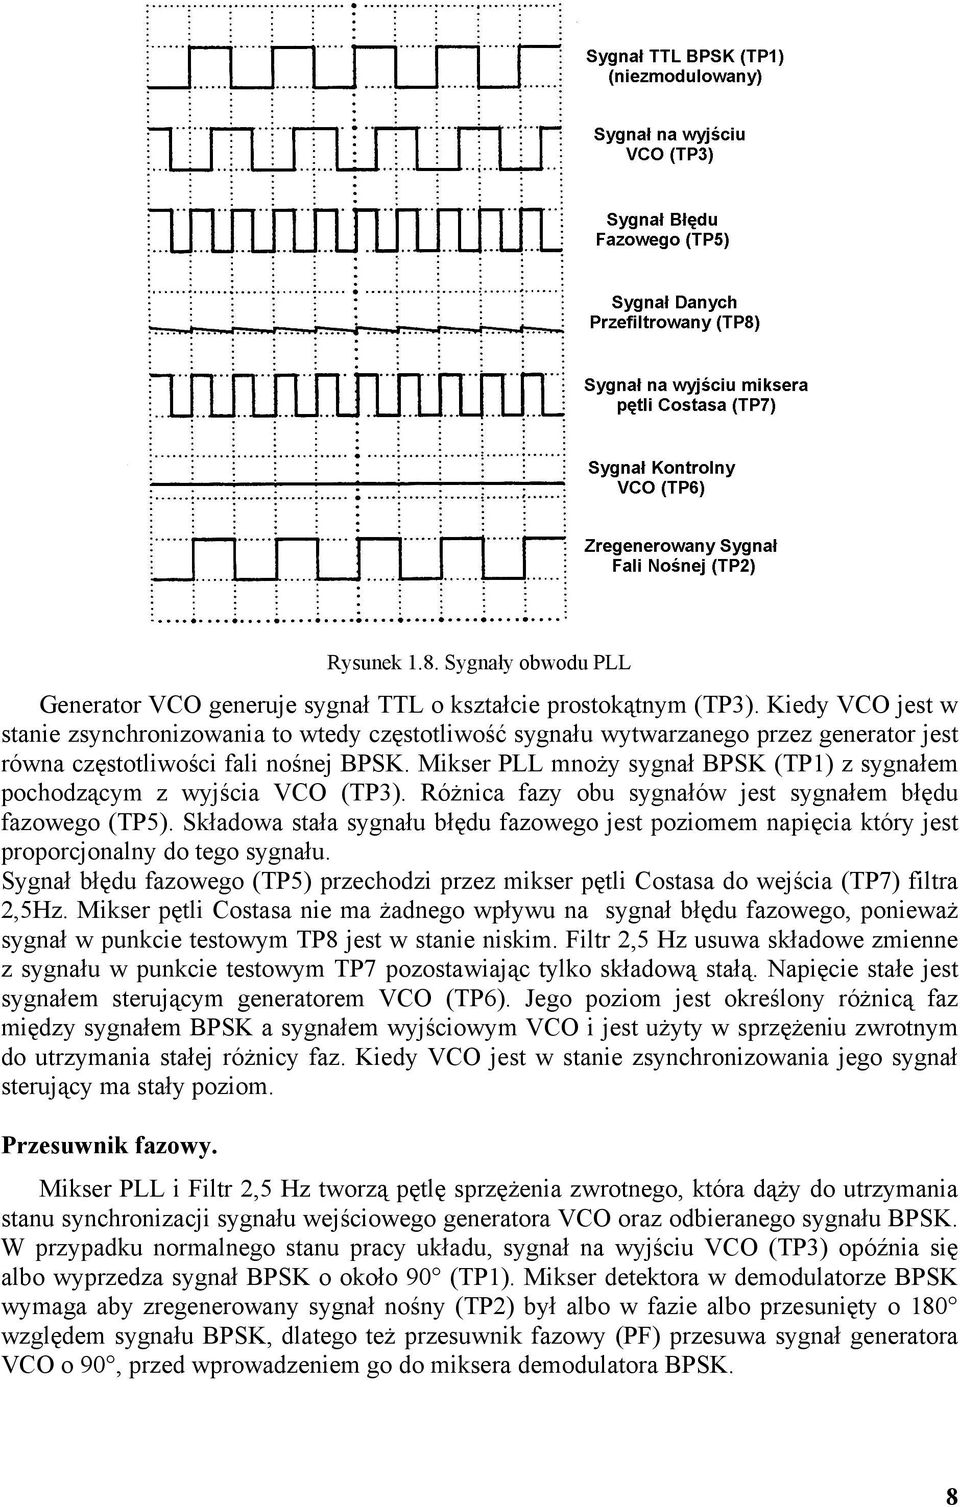 Mikser PLL mnoży sygnał BPSK (TP1) z sygnałem pochodzącym z wyjścia VCO (TP3). Różnica fazy obu sygnałów jest sygnałem błędu fazowego (TP5).